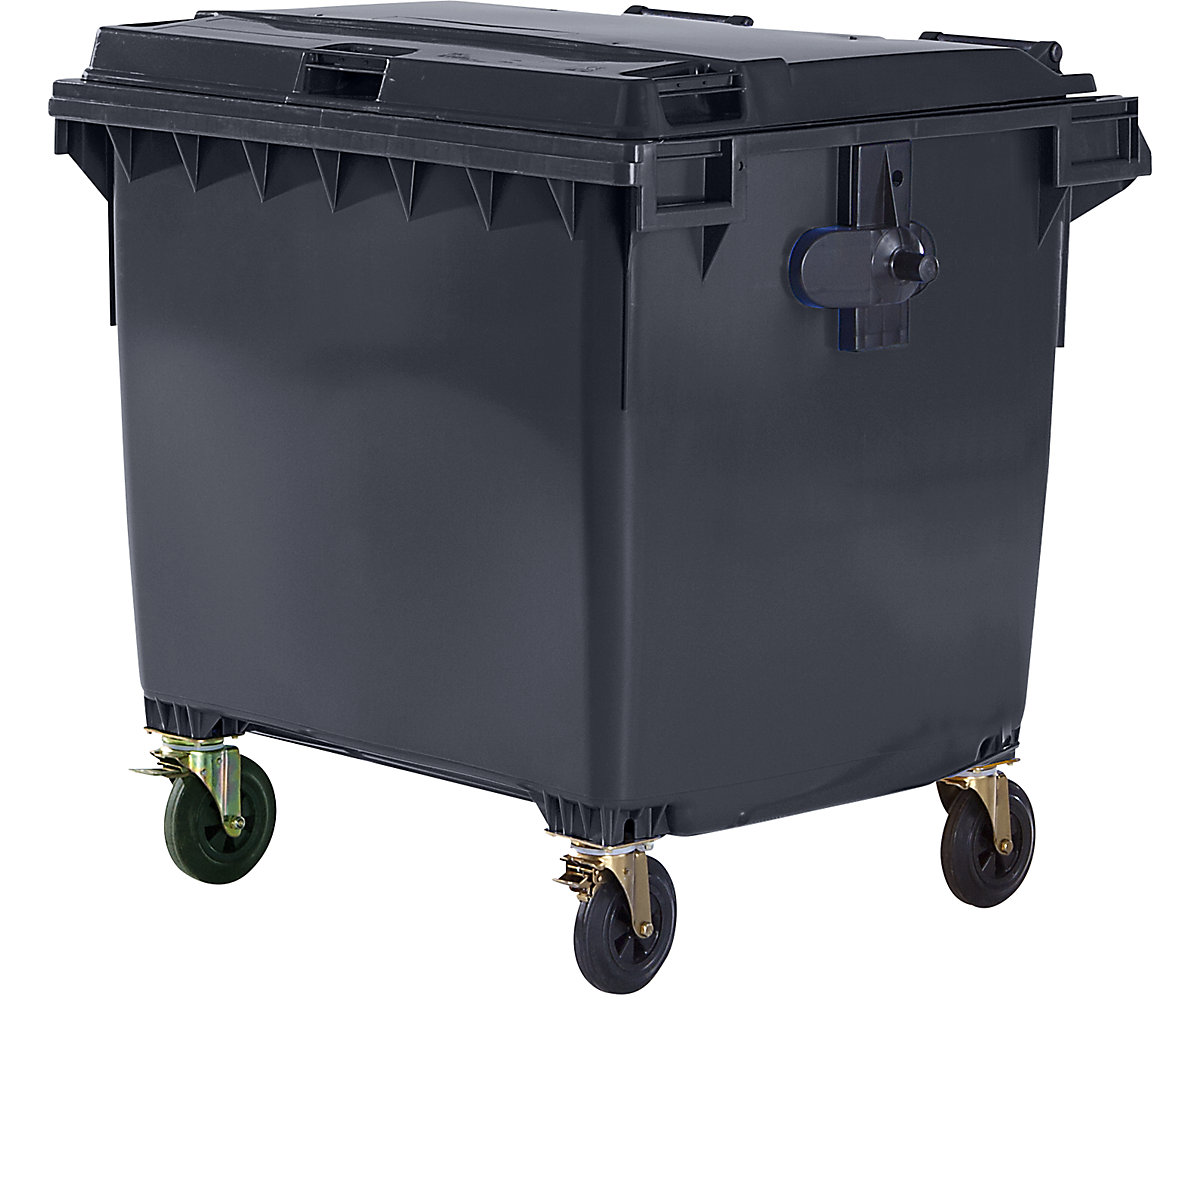 Müllcontainer aus Kunststoff, DIN EN 840, Volumen 1100 l, BxHxT 1370 x 1470 x 1115 mm, anthrazit